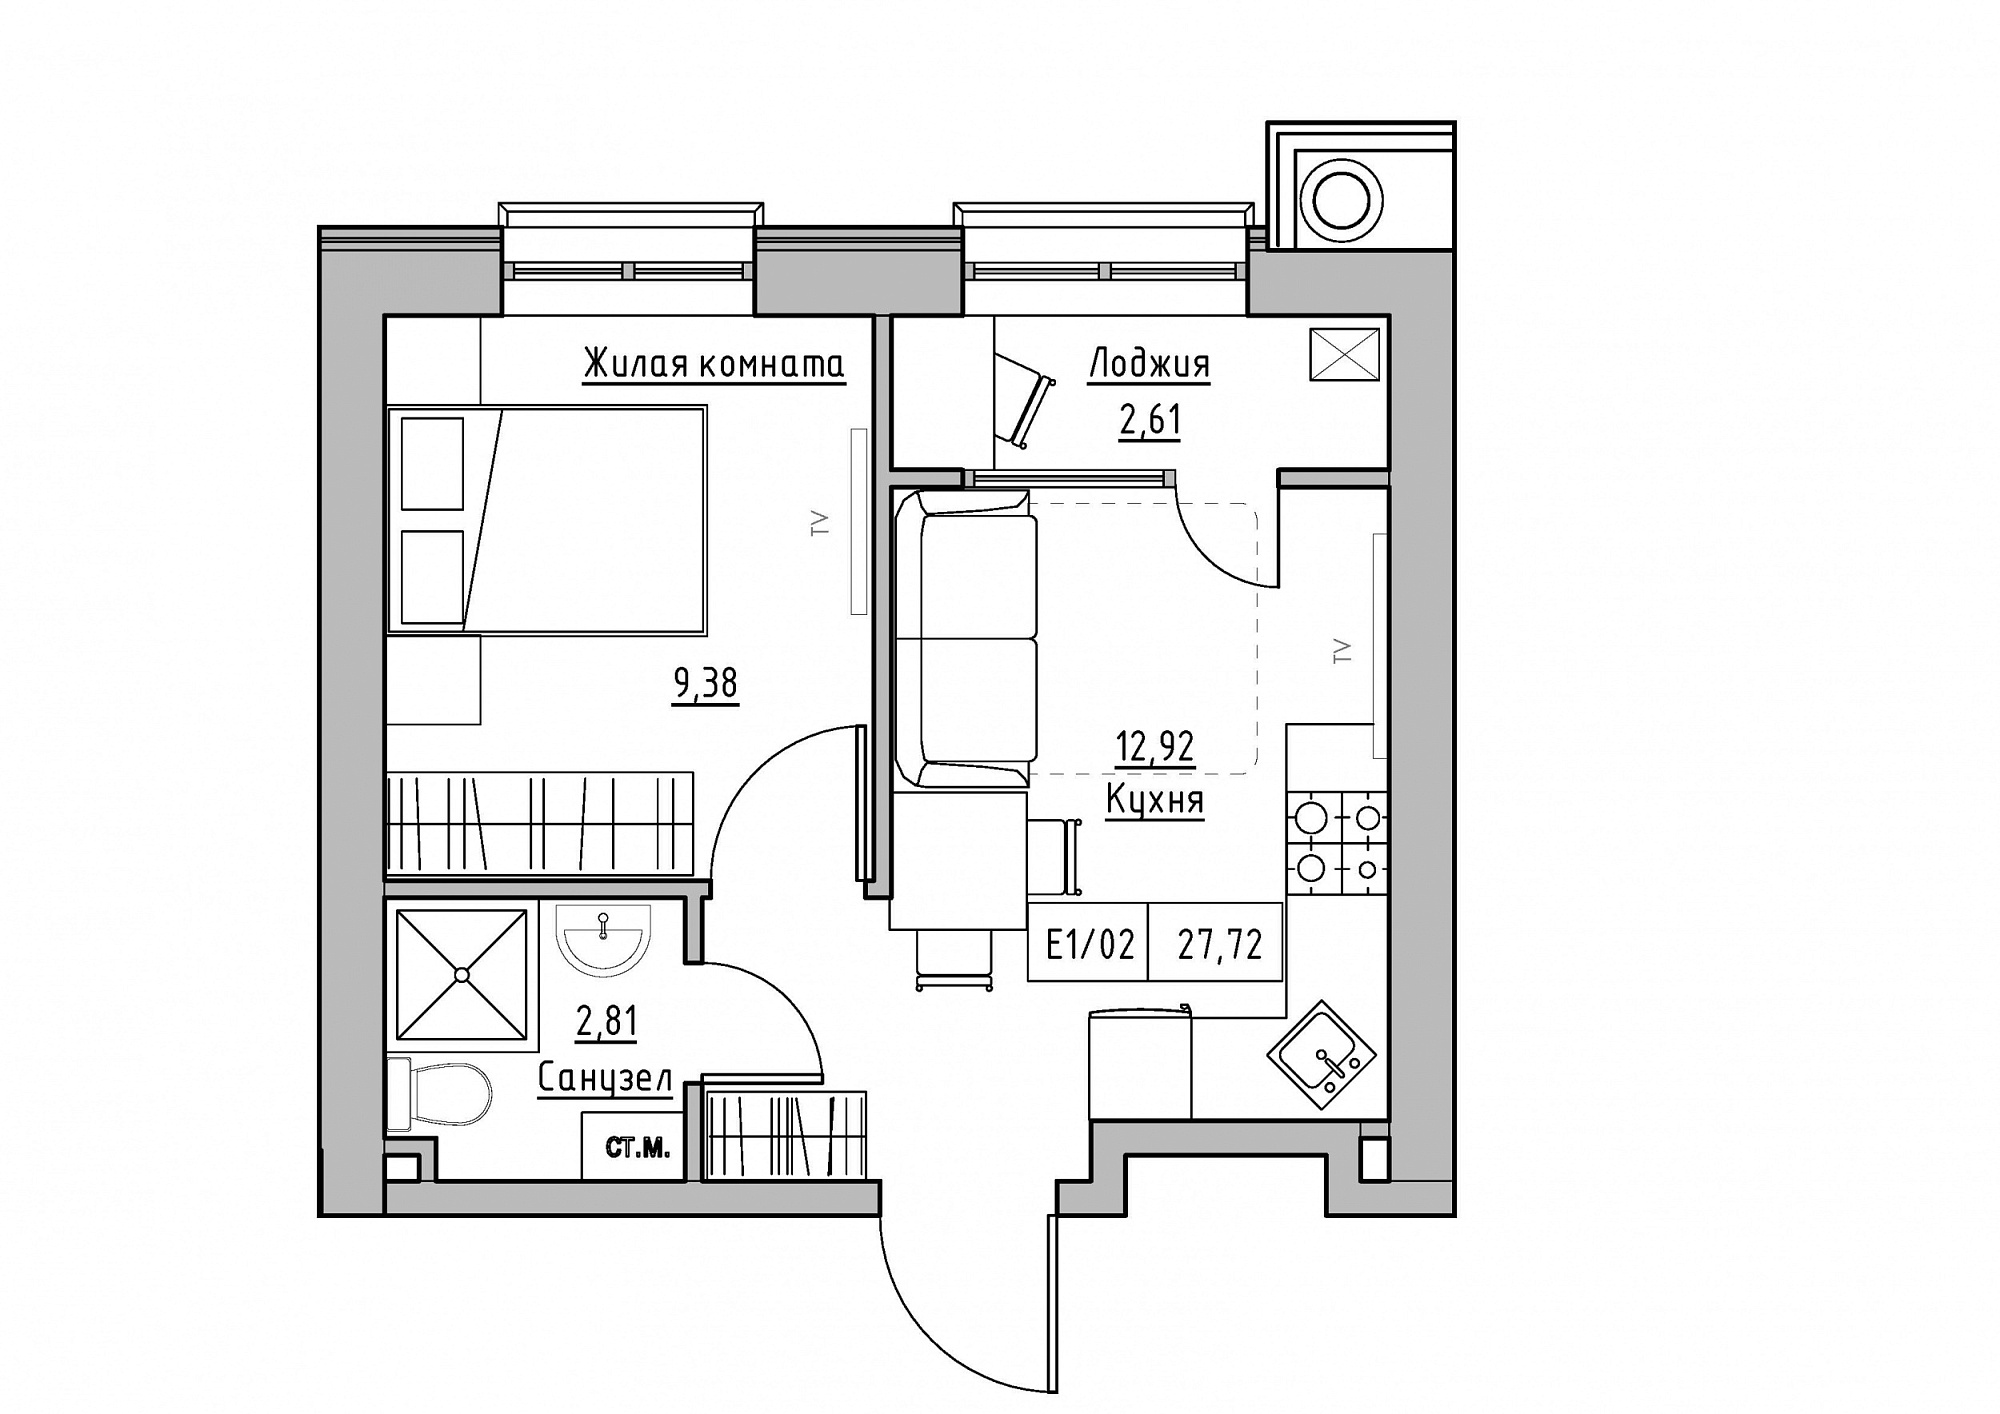 Планування 1-к квартира площею 27.72м2, KS-012-05/0001.